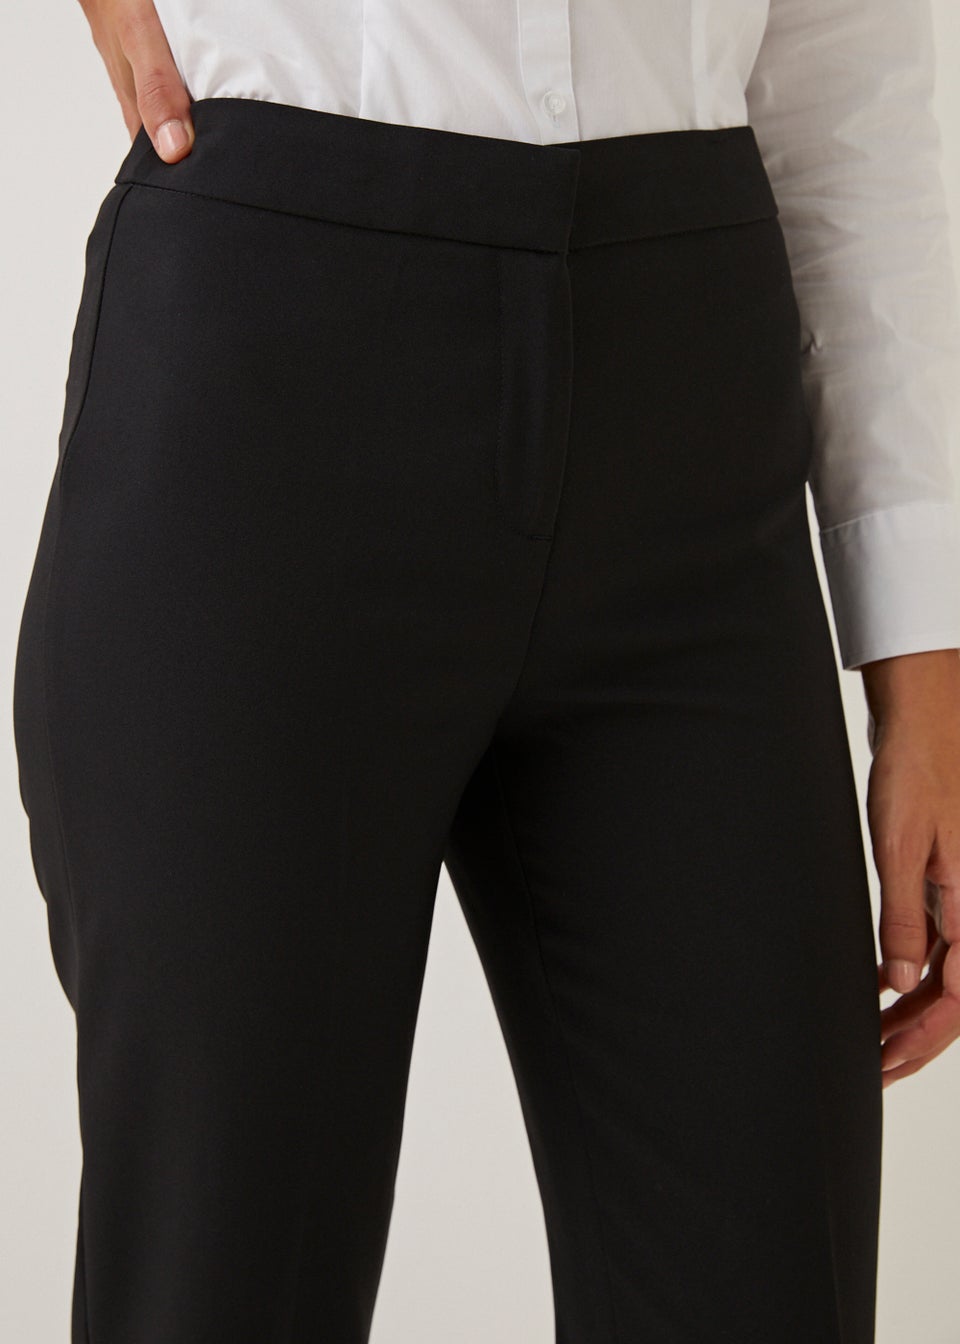 Women Black Trousers  Buy Women Black Trousers online in India